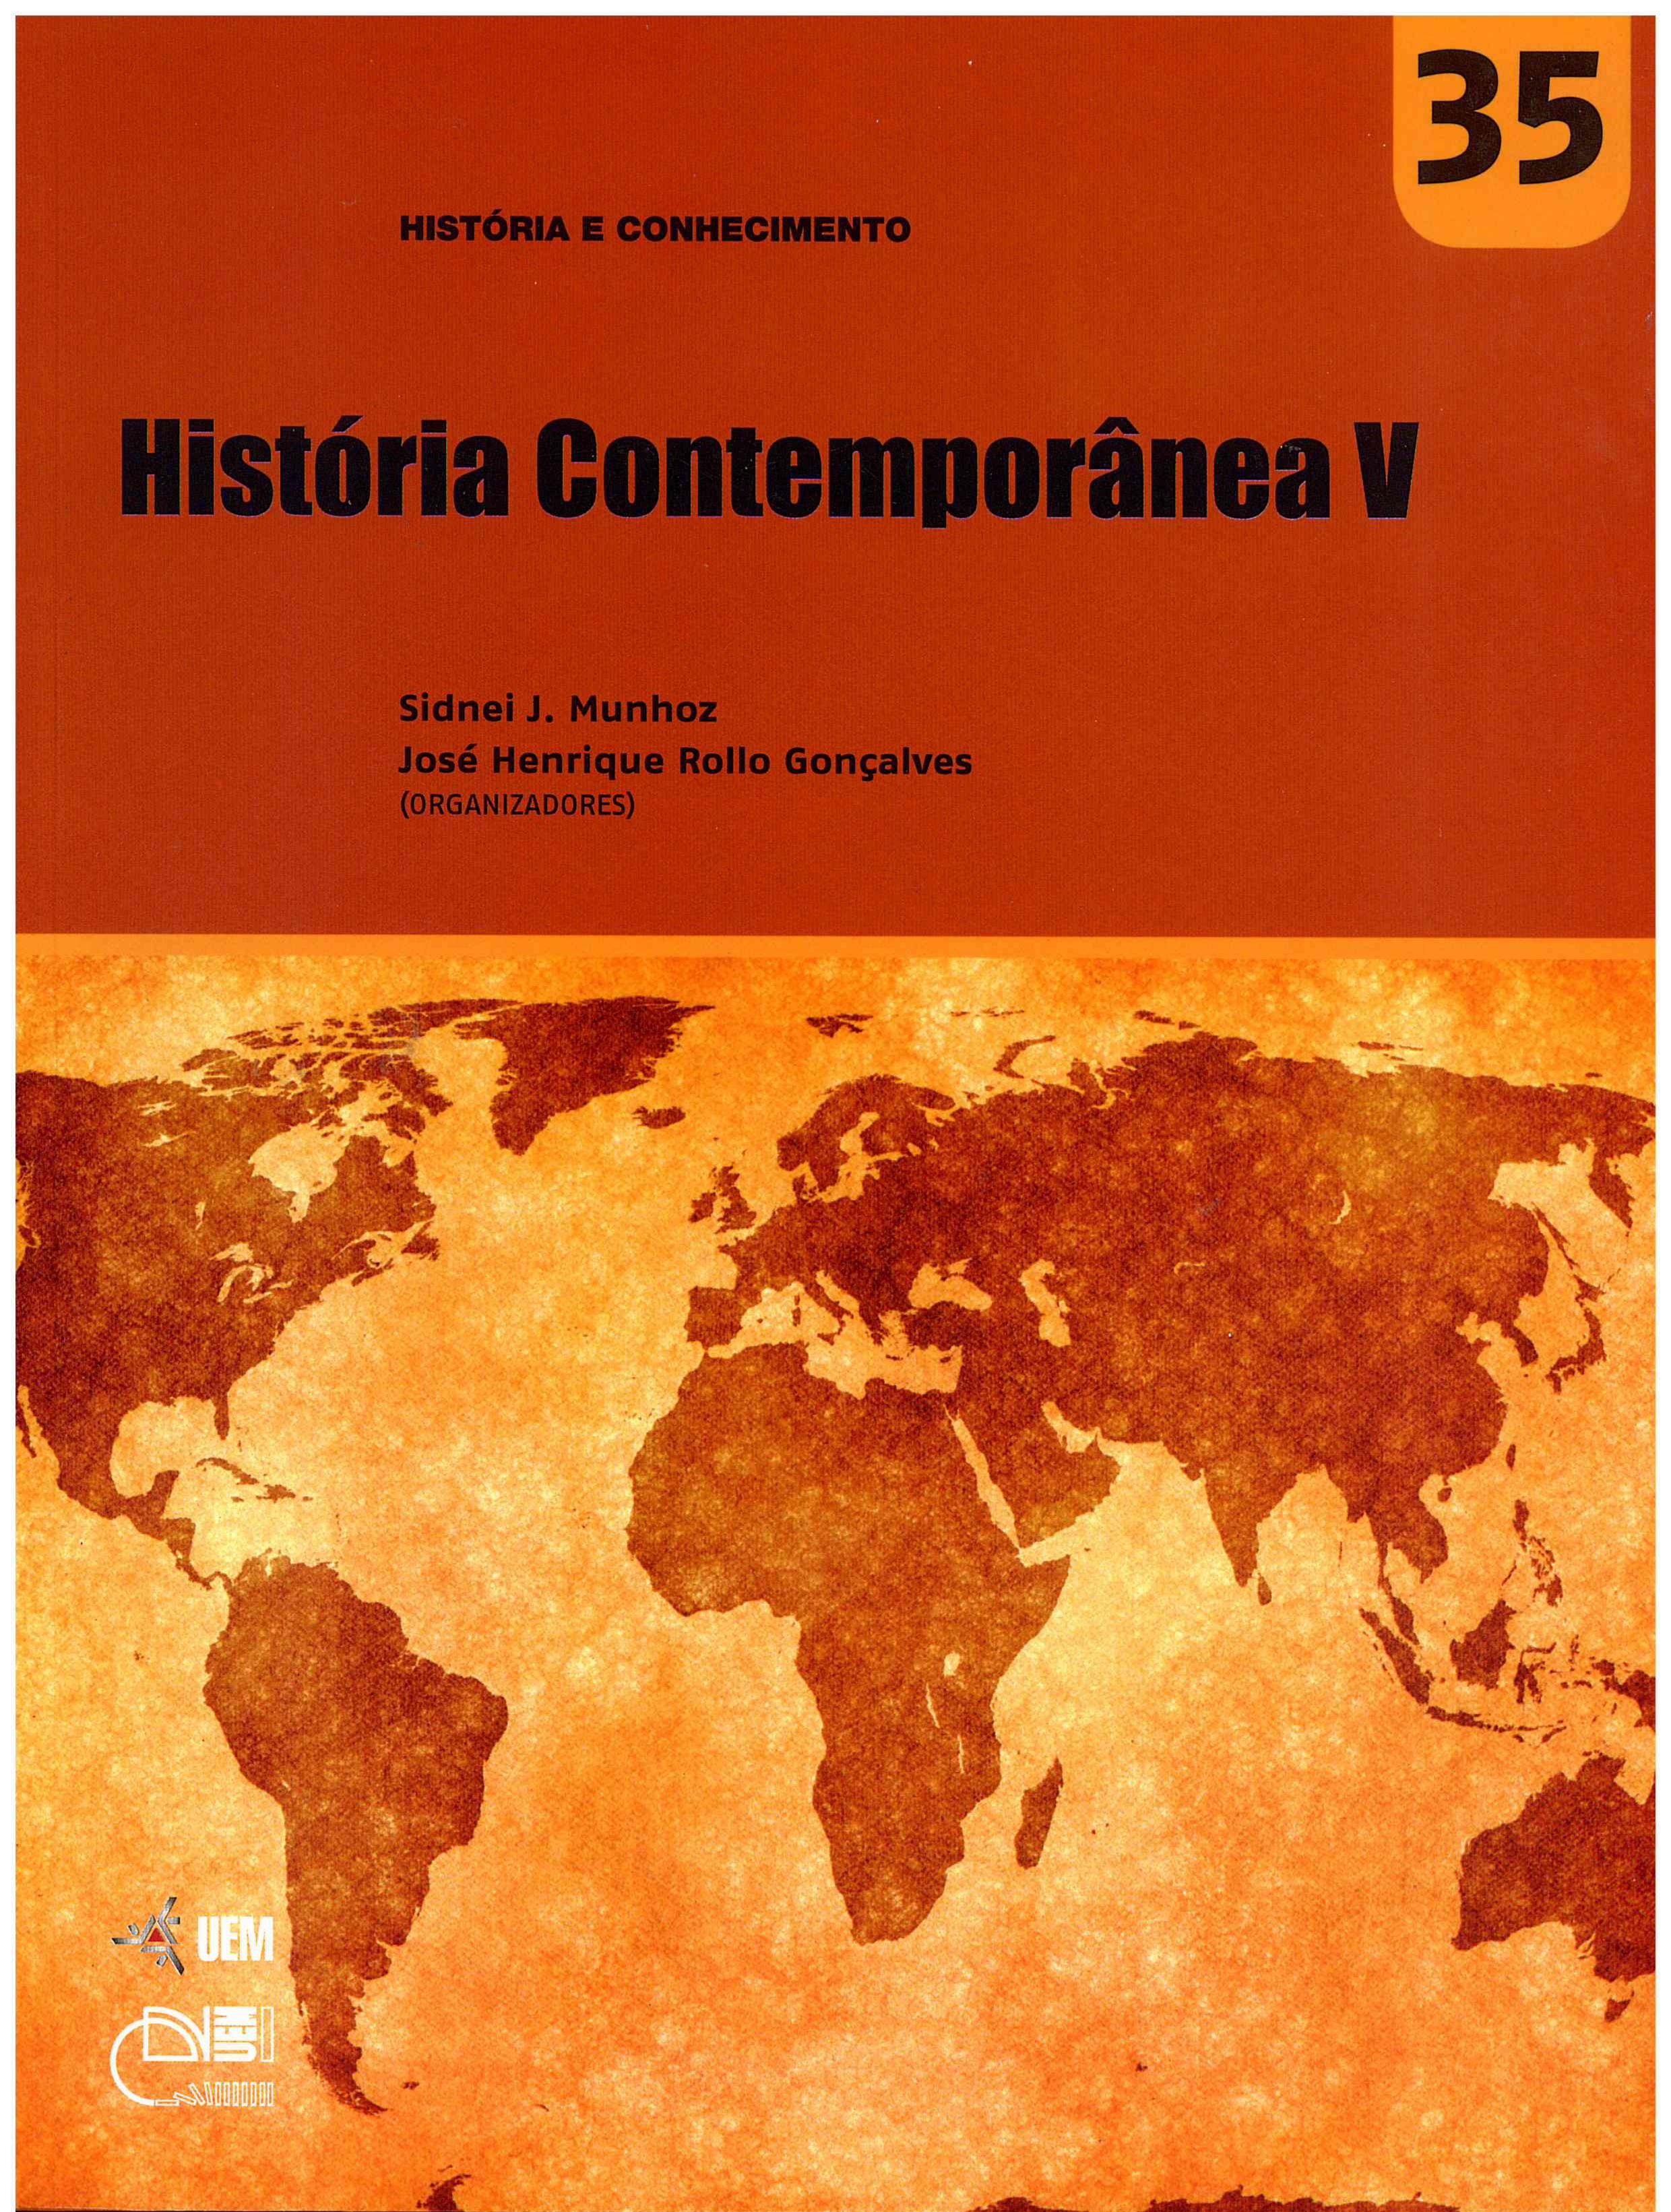 MUNHOZ, S. J.; GONÇALVES, J. H. R. (Orgs.). História Contemporânea V